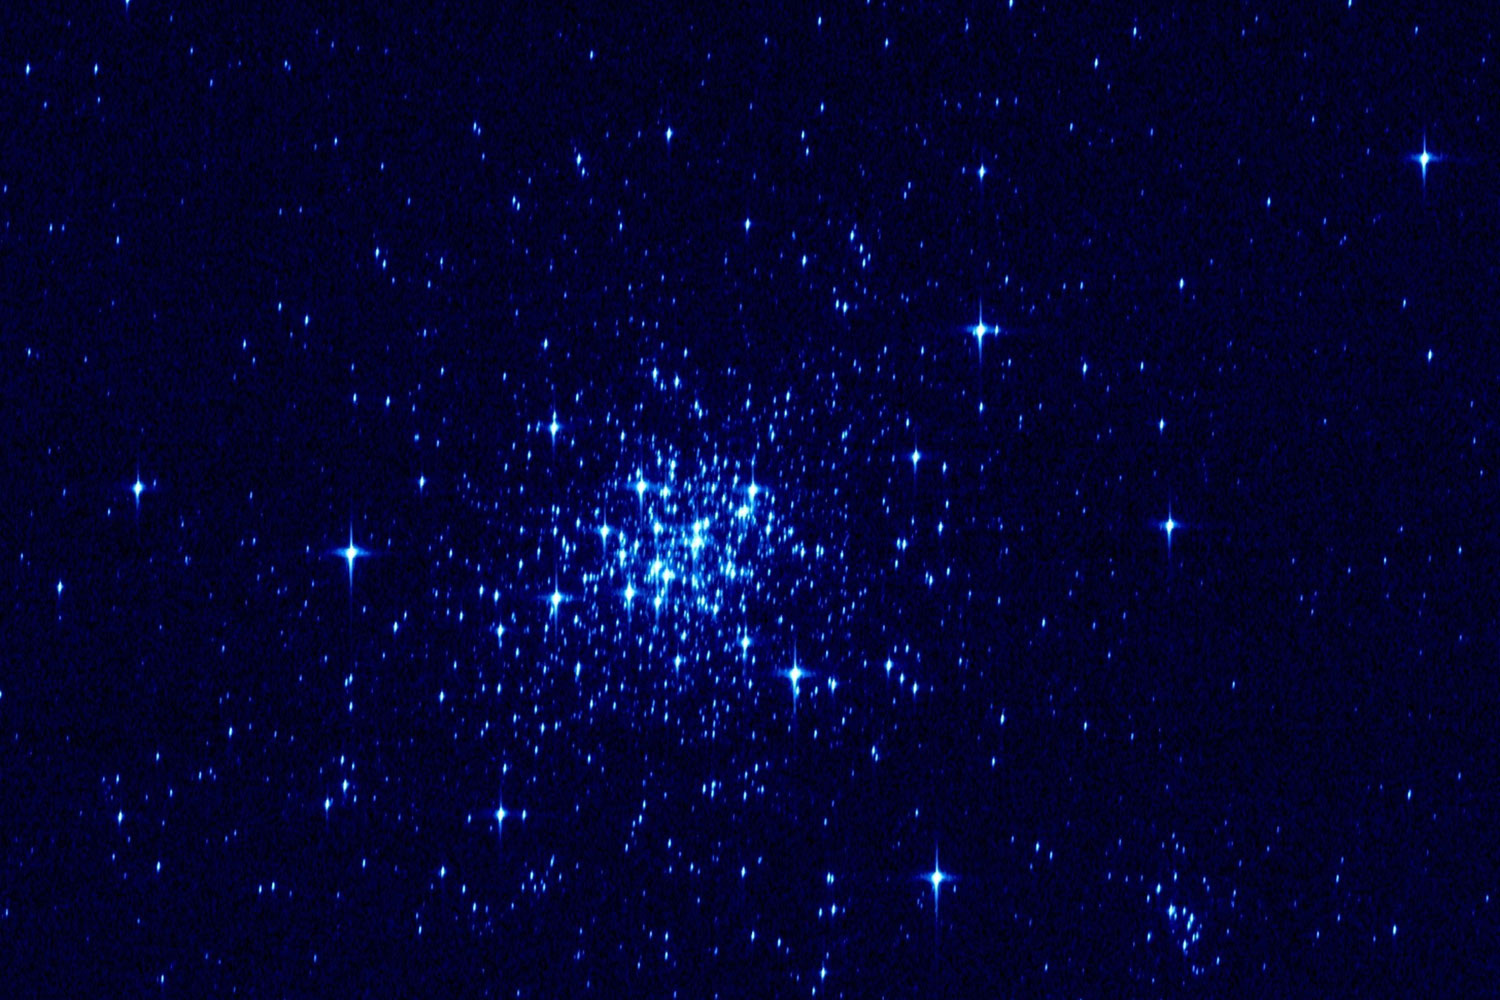 Primera imagen tomada por el telescopio espacial Gaia